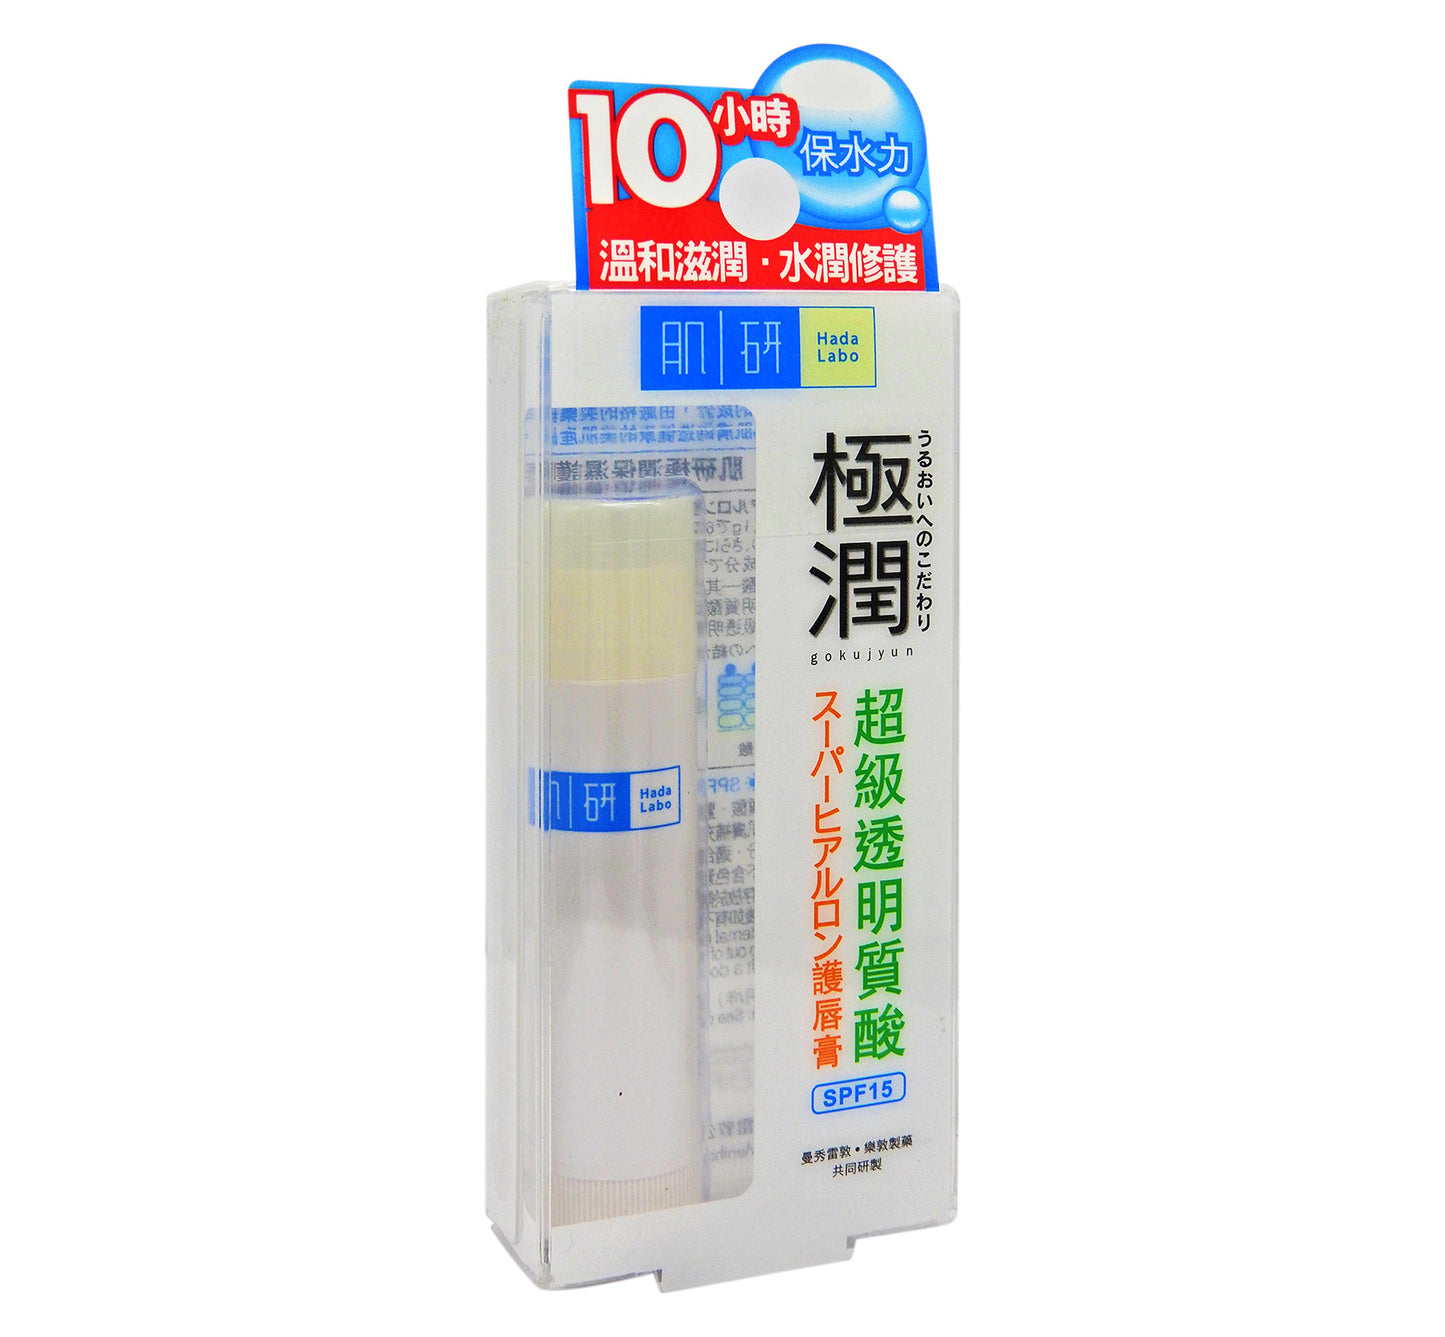 曼秀雷敦 - 極潤系列 肌研極潤保濕護唇膏 3.5g #56858